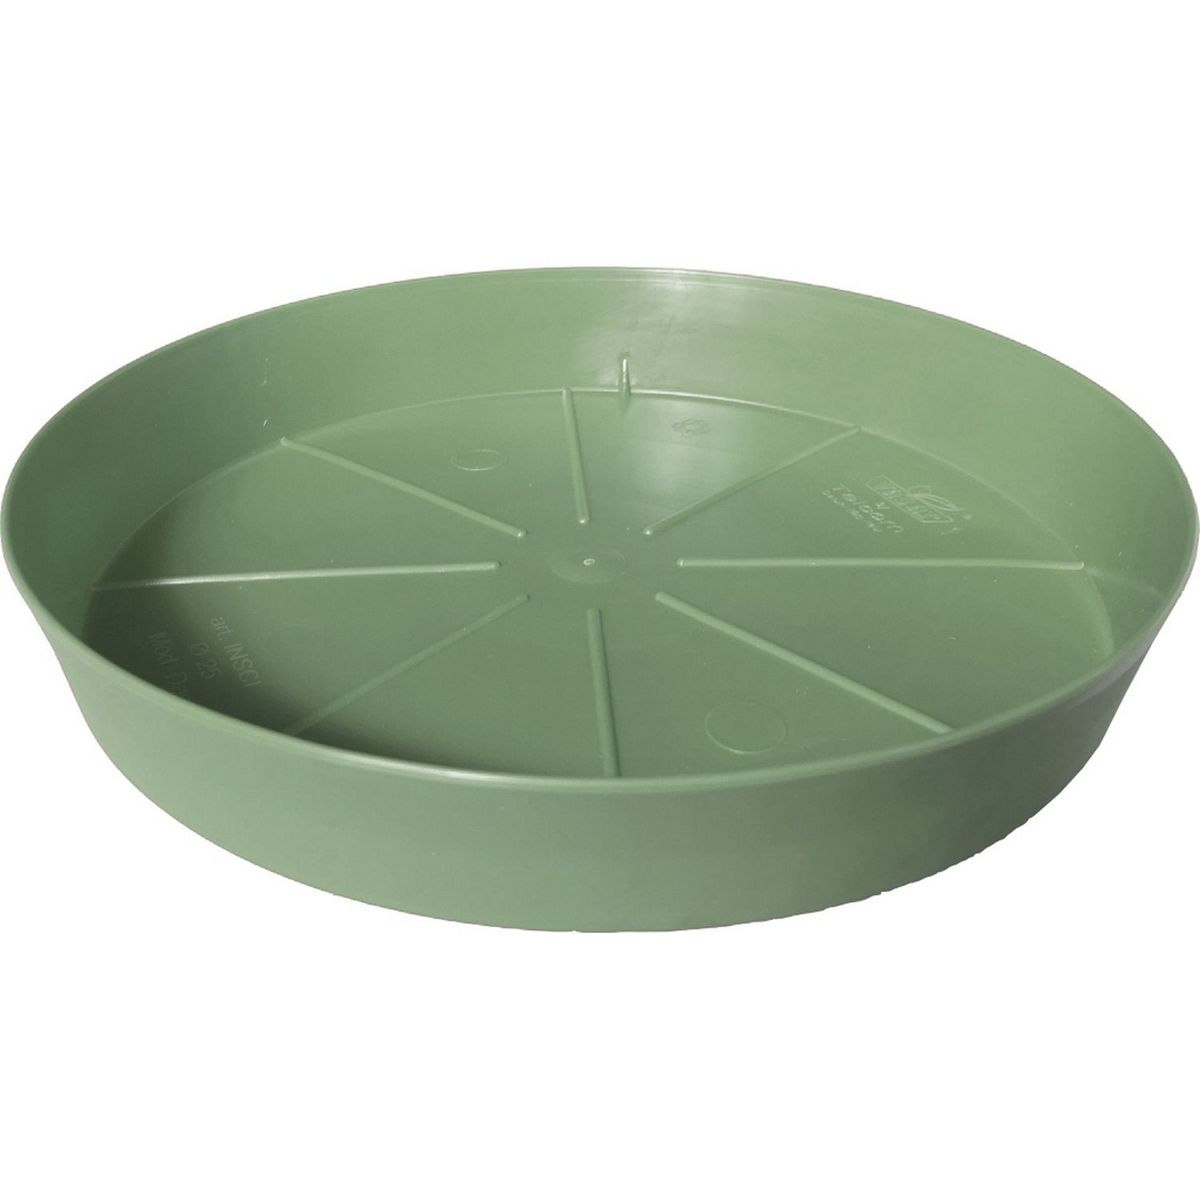 Soucoupe D35 cm pour pot ICFAL vert sauge